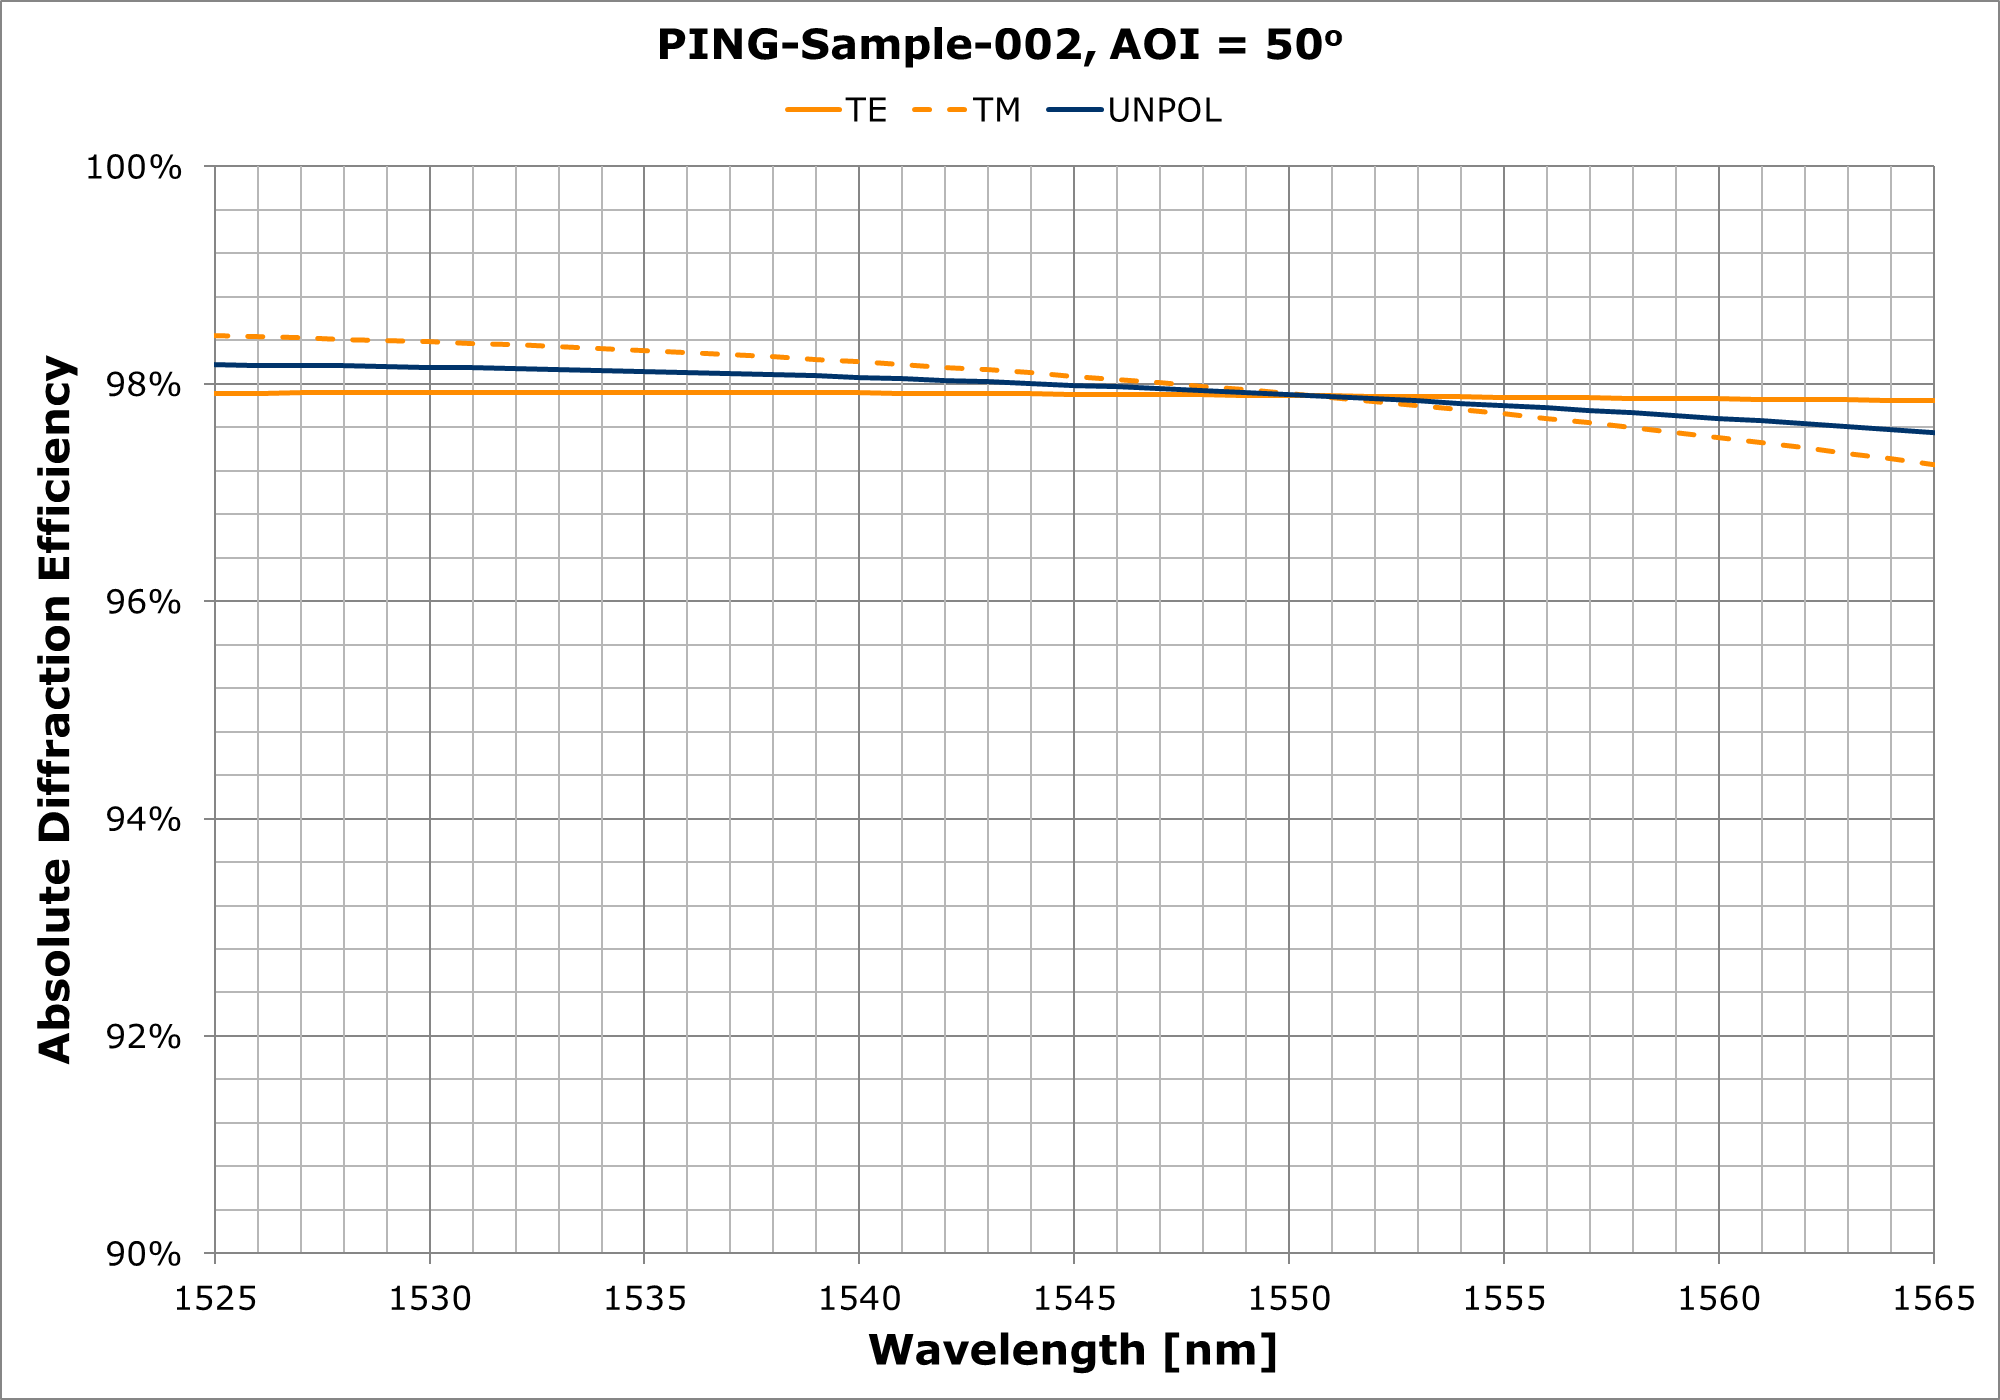 PING-Sample-002